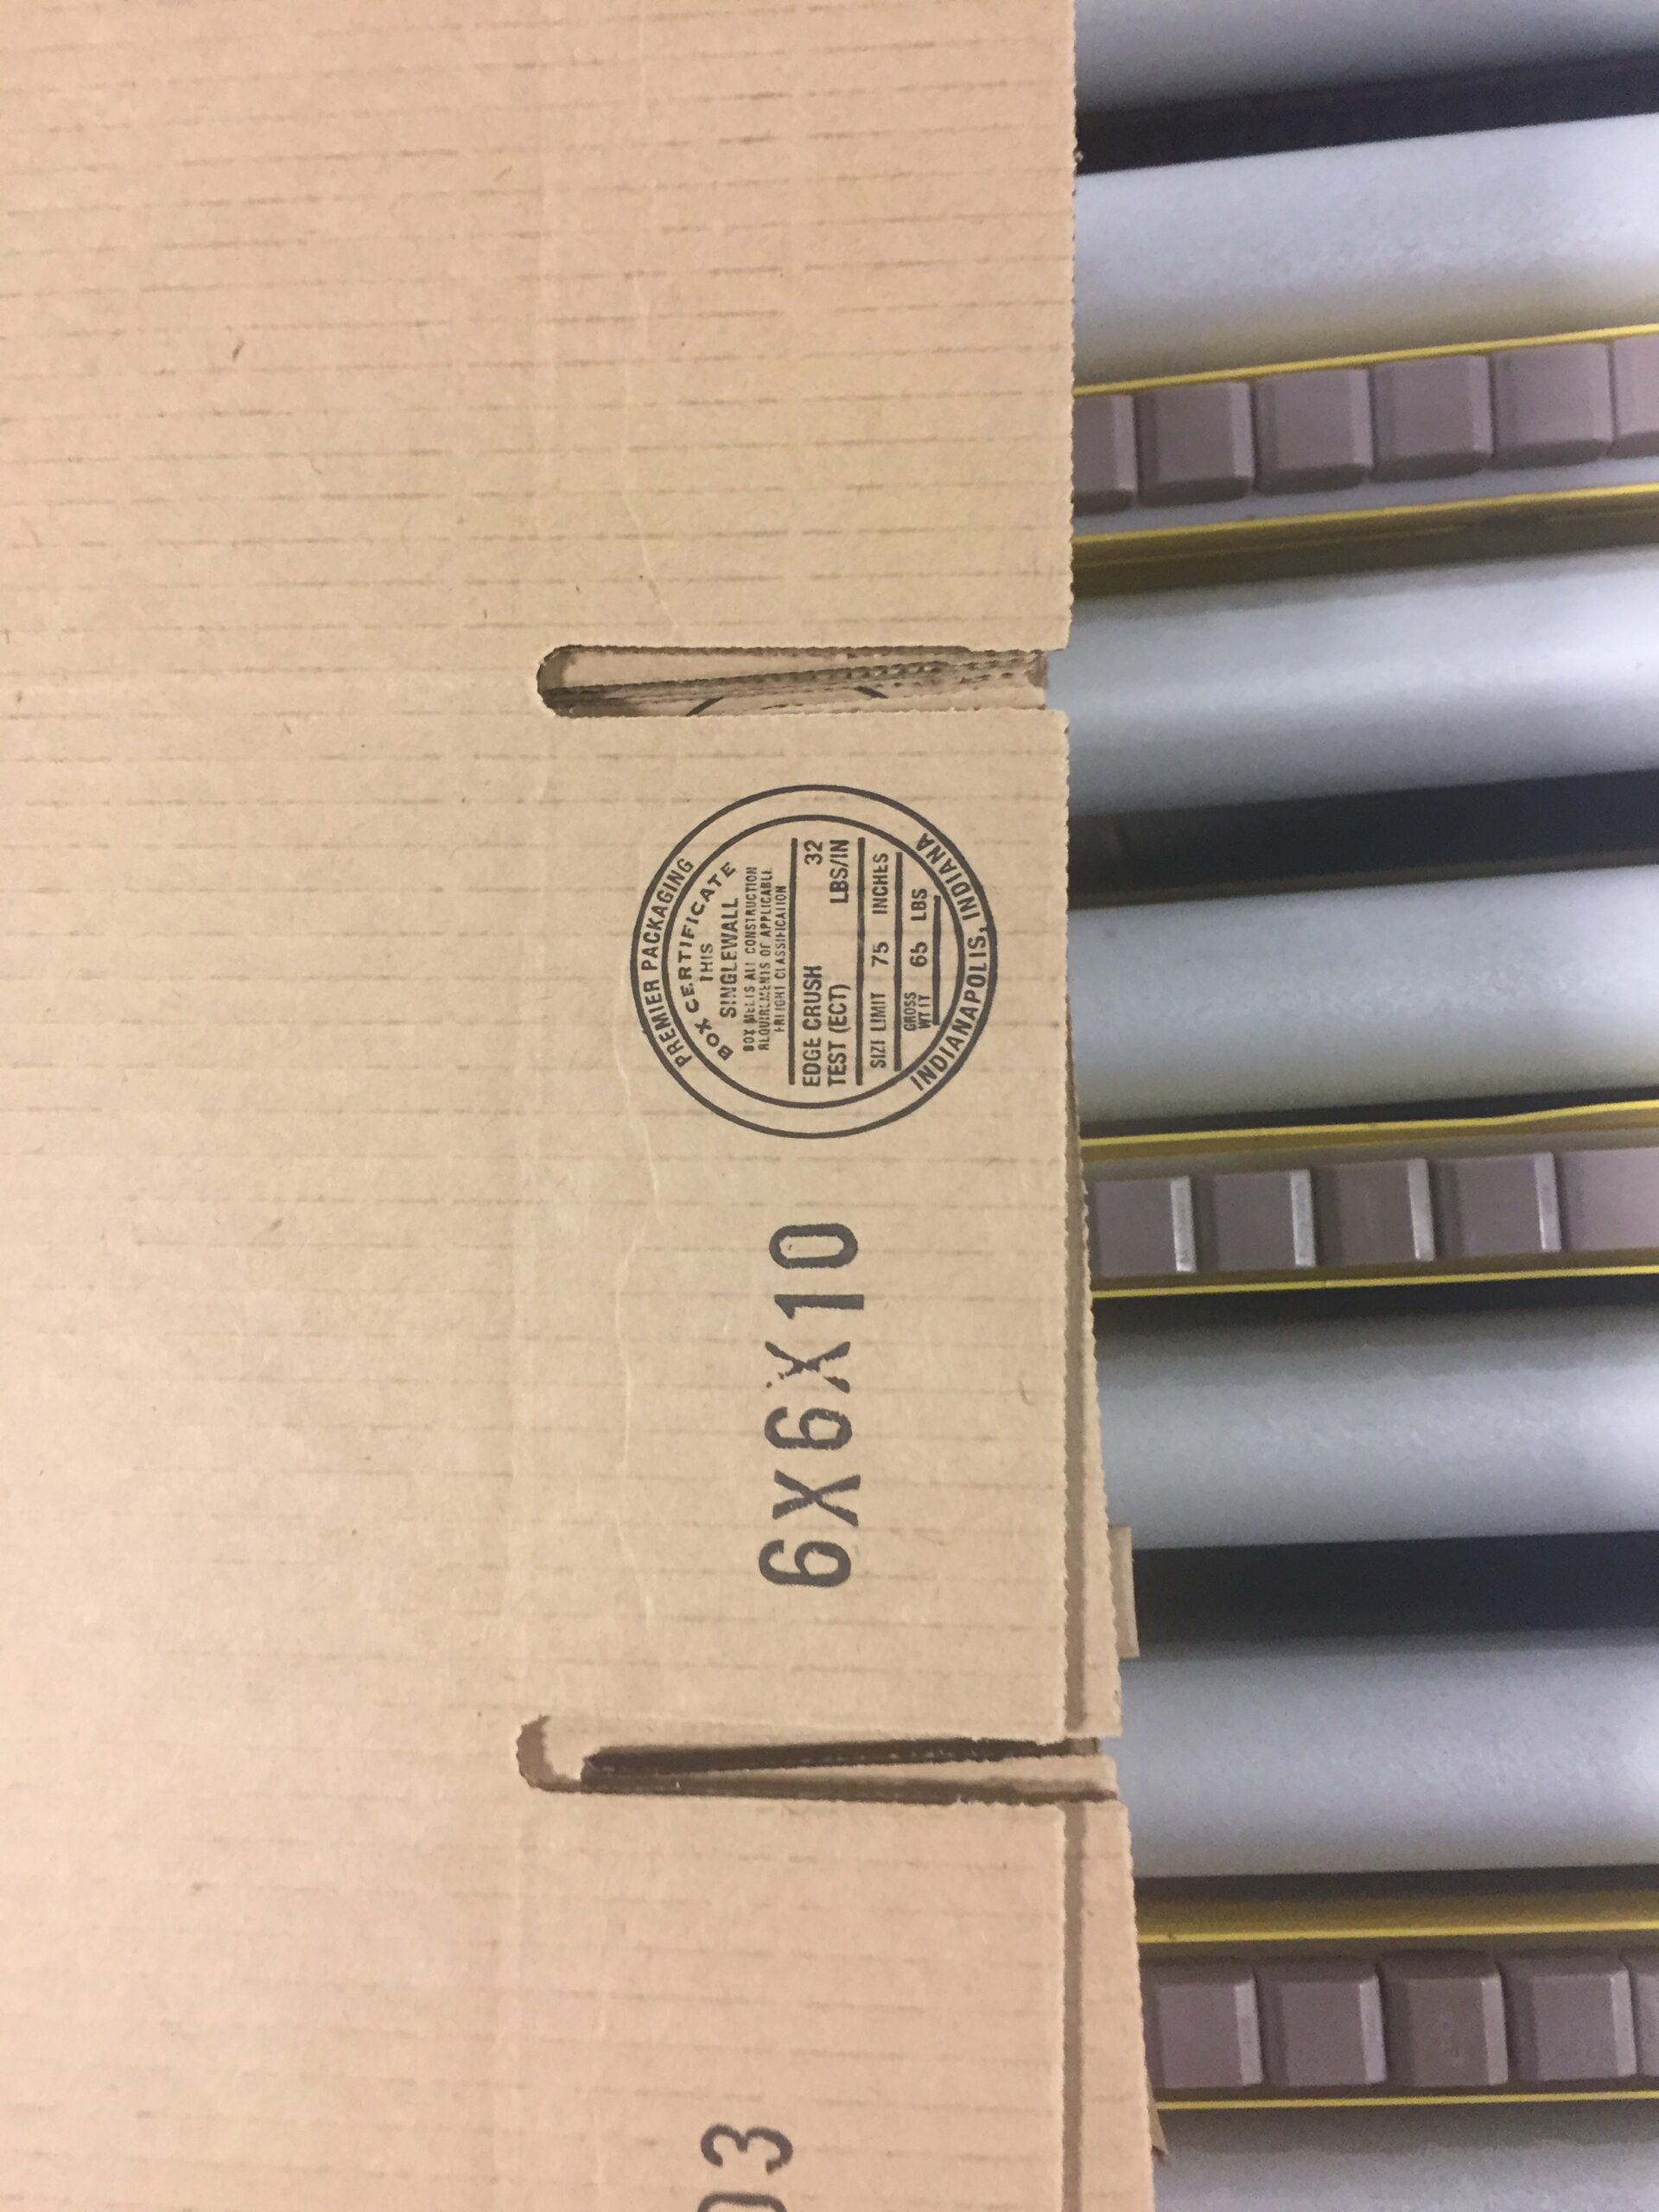 Caja corrugada con sello de certificación; cajas de cartón personalizadas